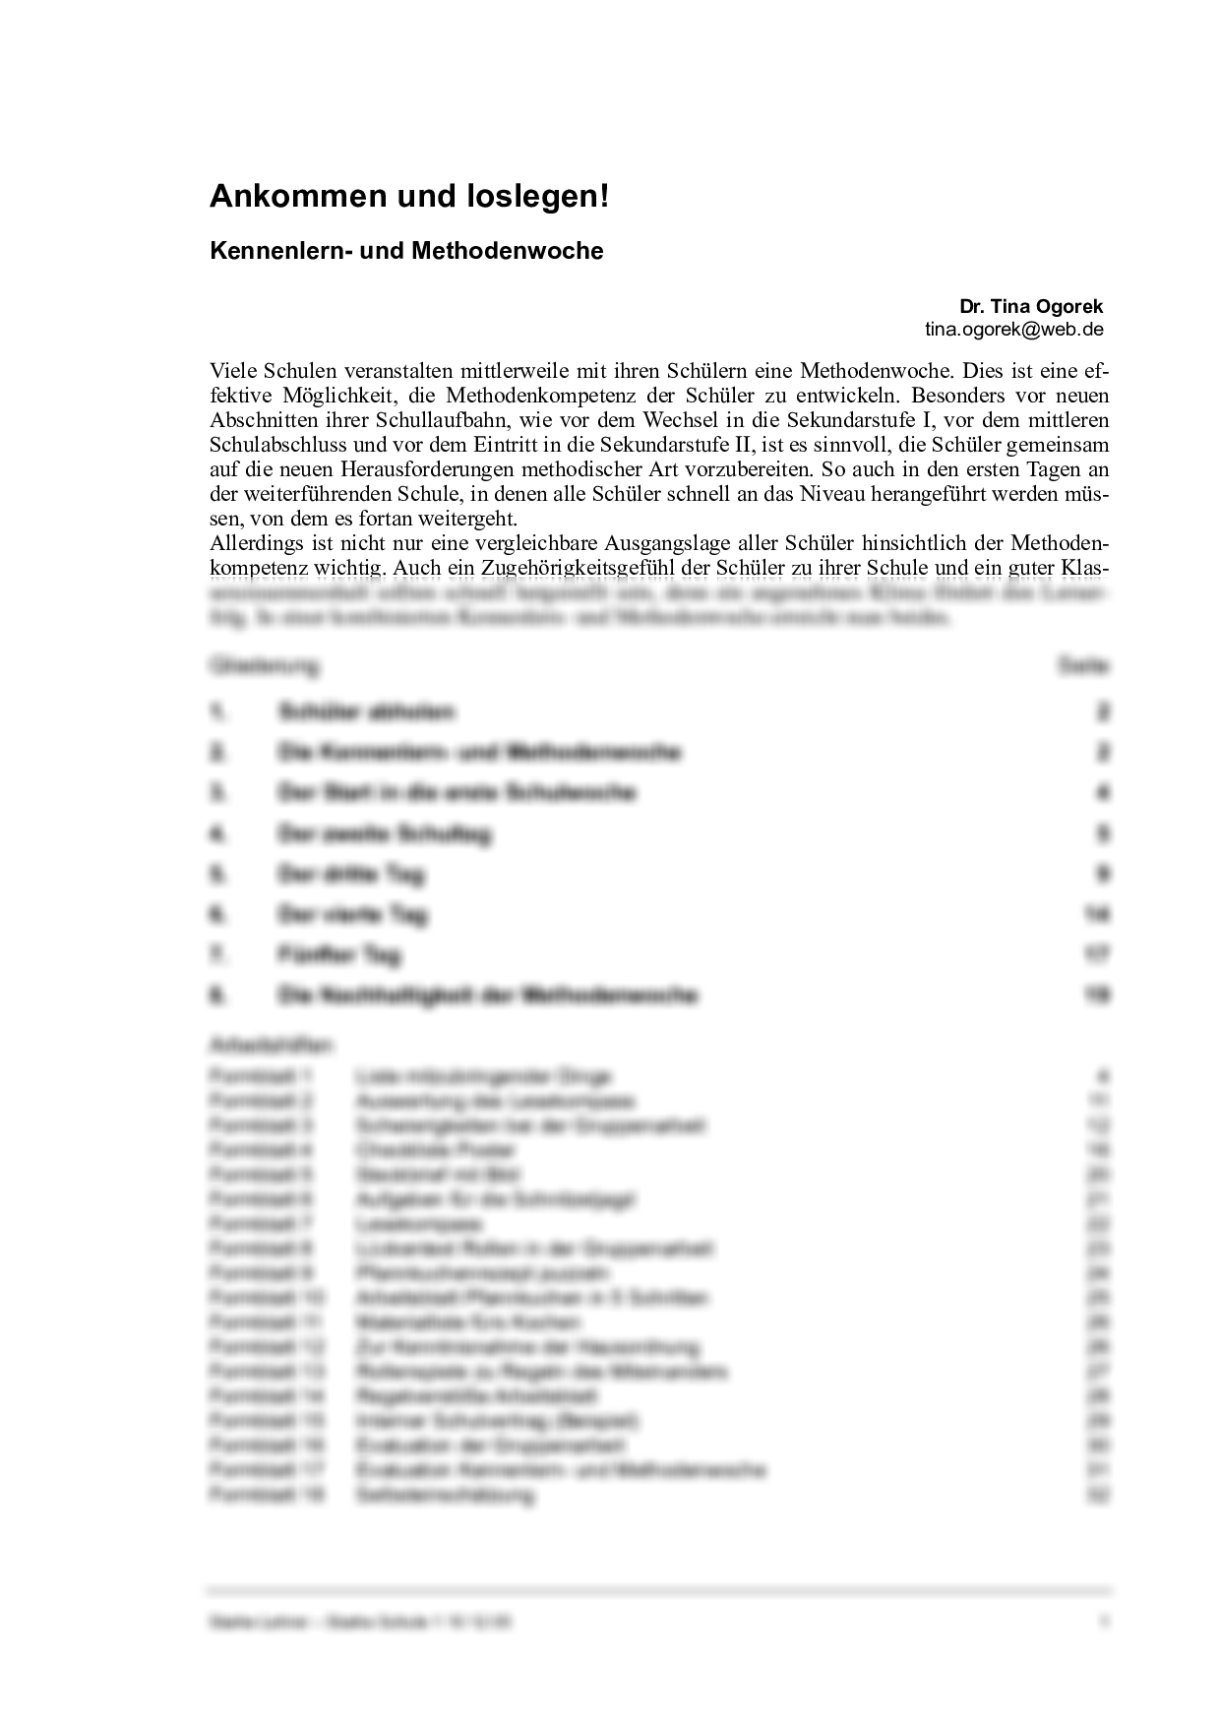 Methodenkompetenz durch Kennenlern- und Methodenwoche - Seite 1